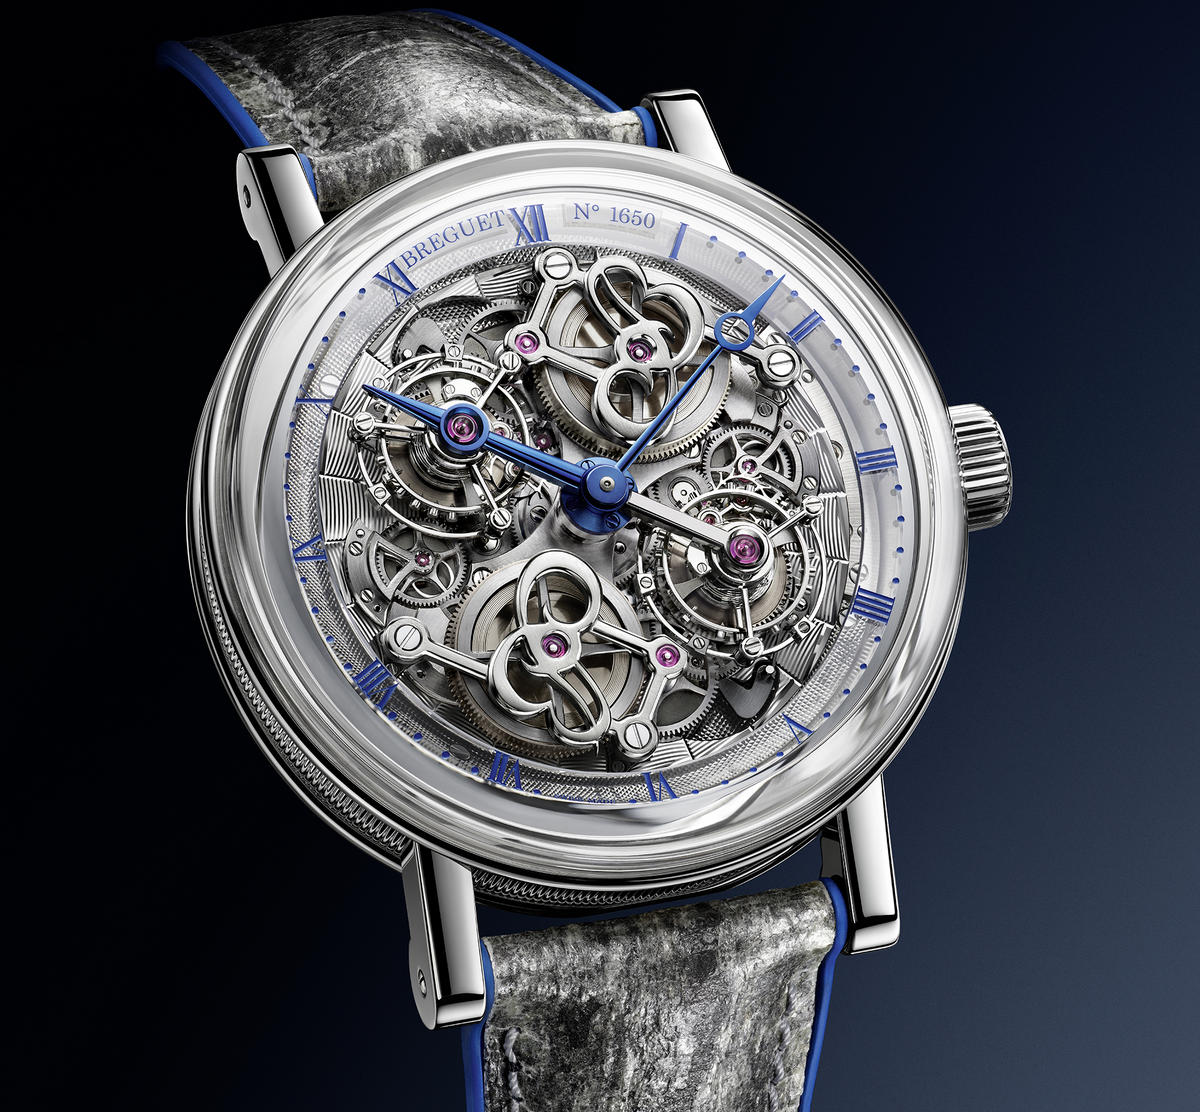 Paris’s oldest public clock has inspired this $680,000 Breguet double tourbillon watch